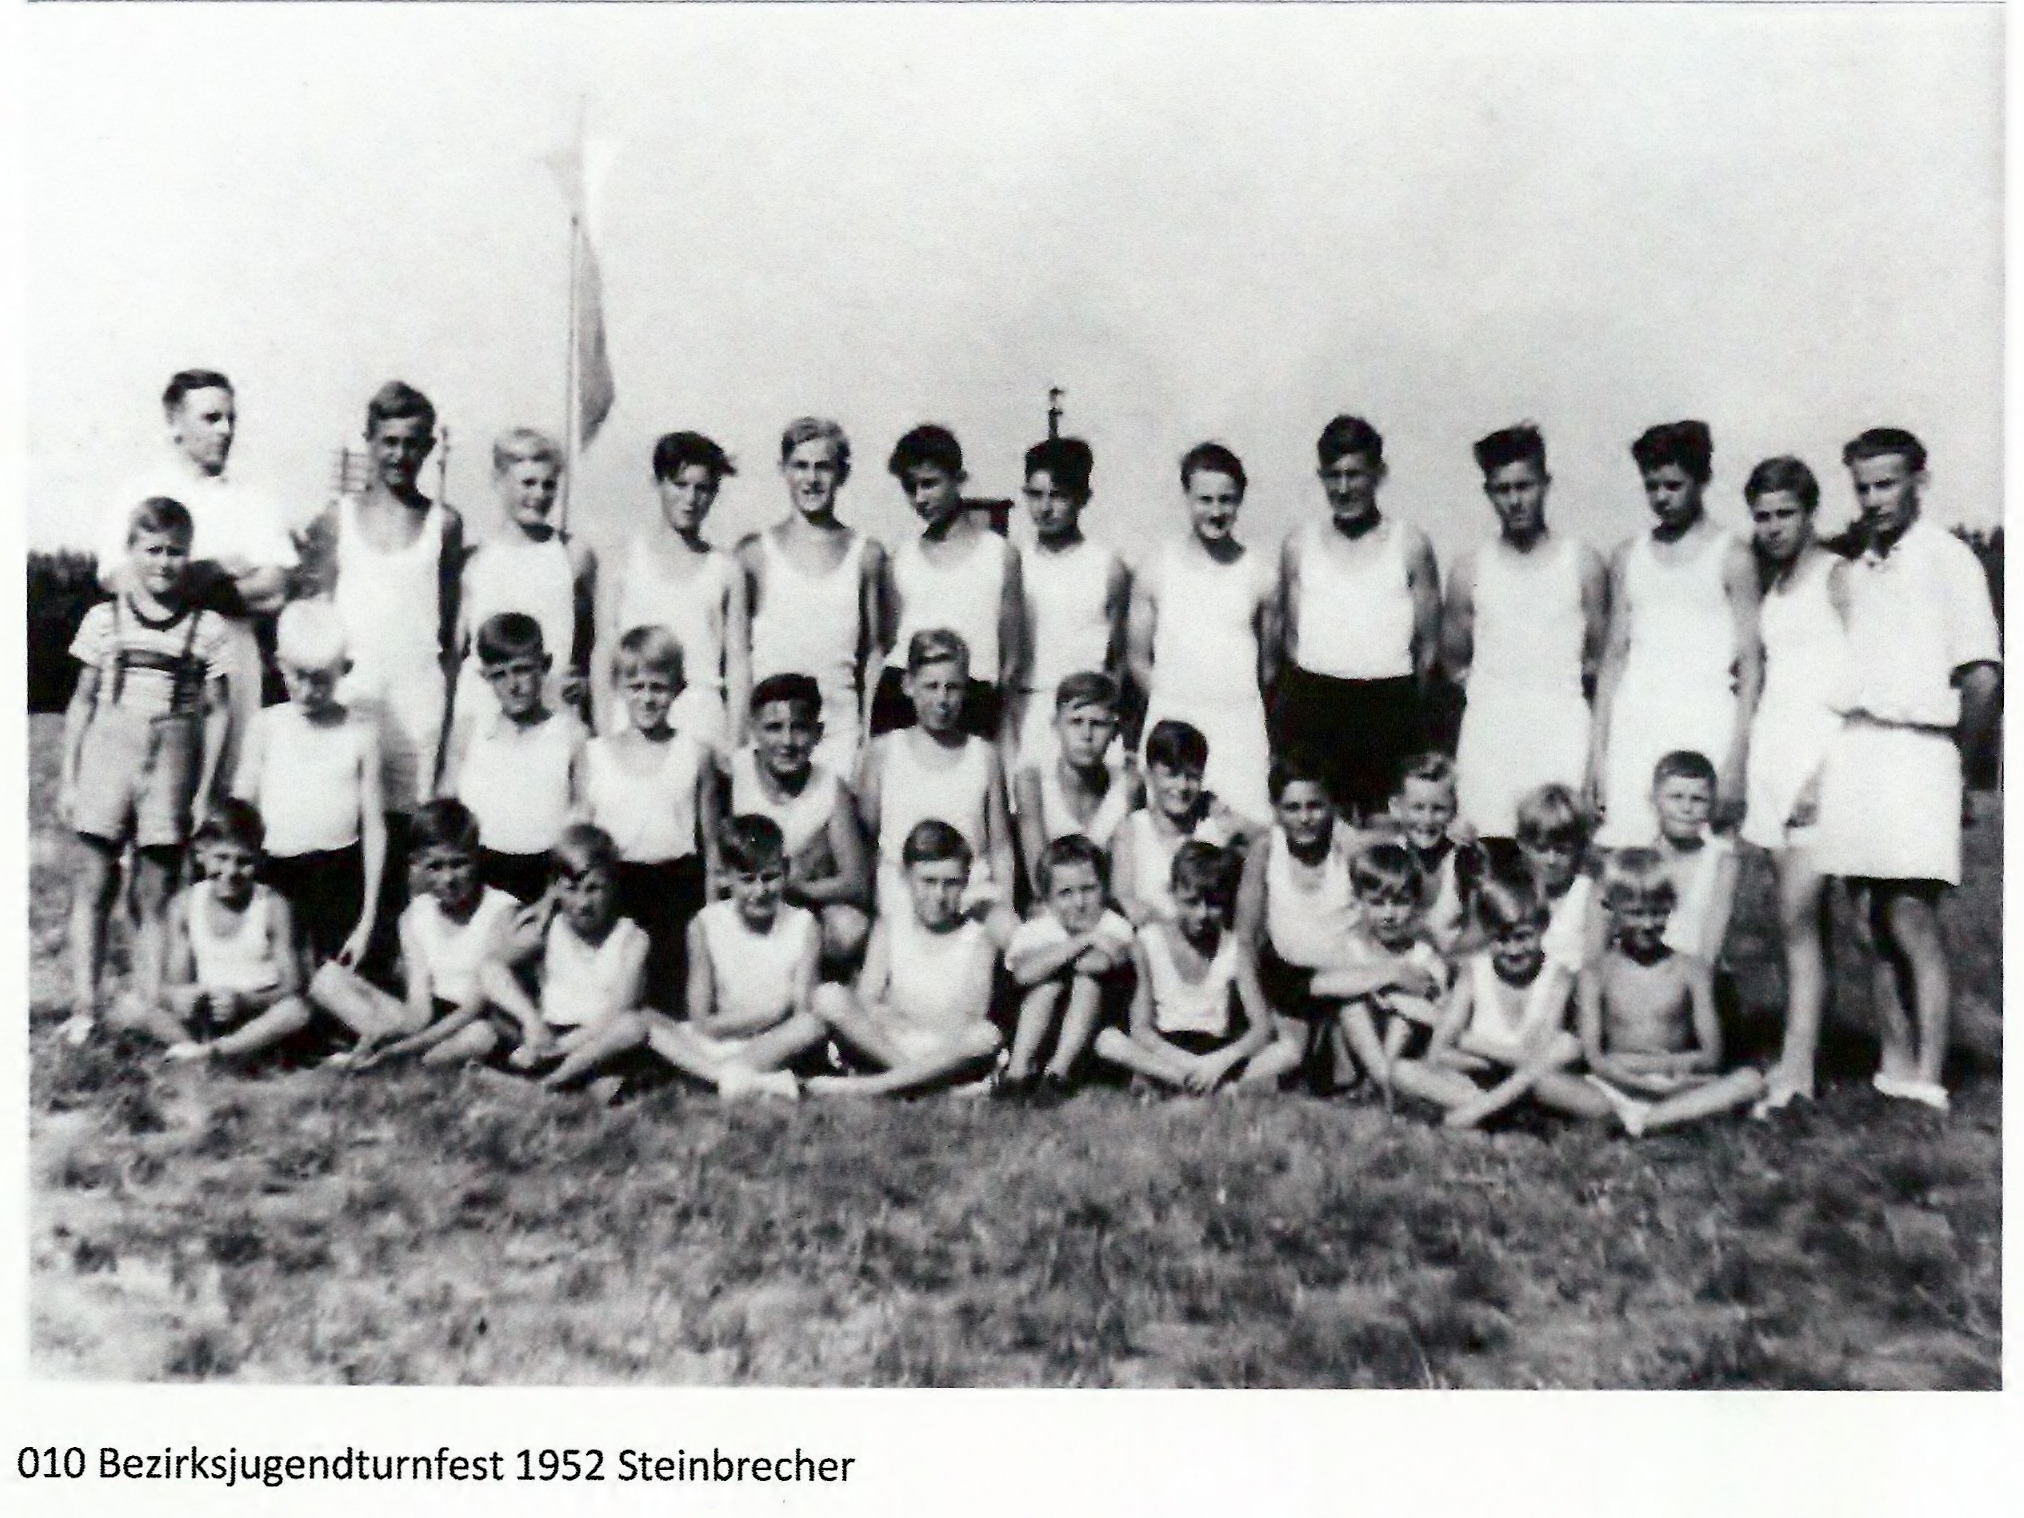 TSV Utting - 1952 Bezirksjugendturnfest, Uttinger Männerturnriege